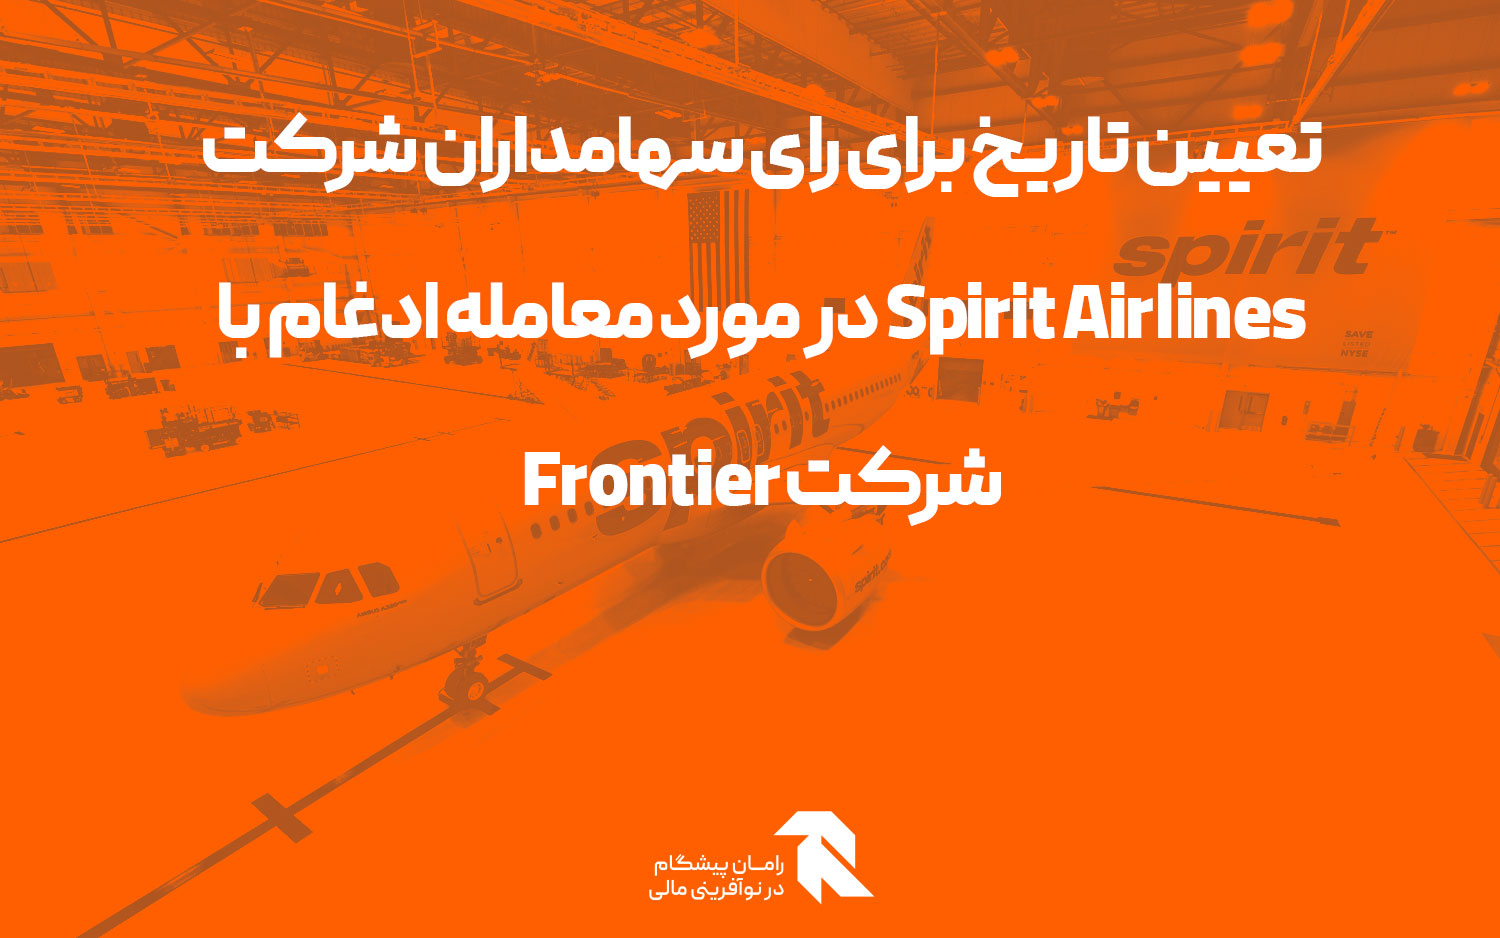 تعیین تاریخ برای رای سهامداران شرکت Spirit Airlines در مورد معامله ادغام با شرکت Frontier